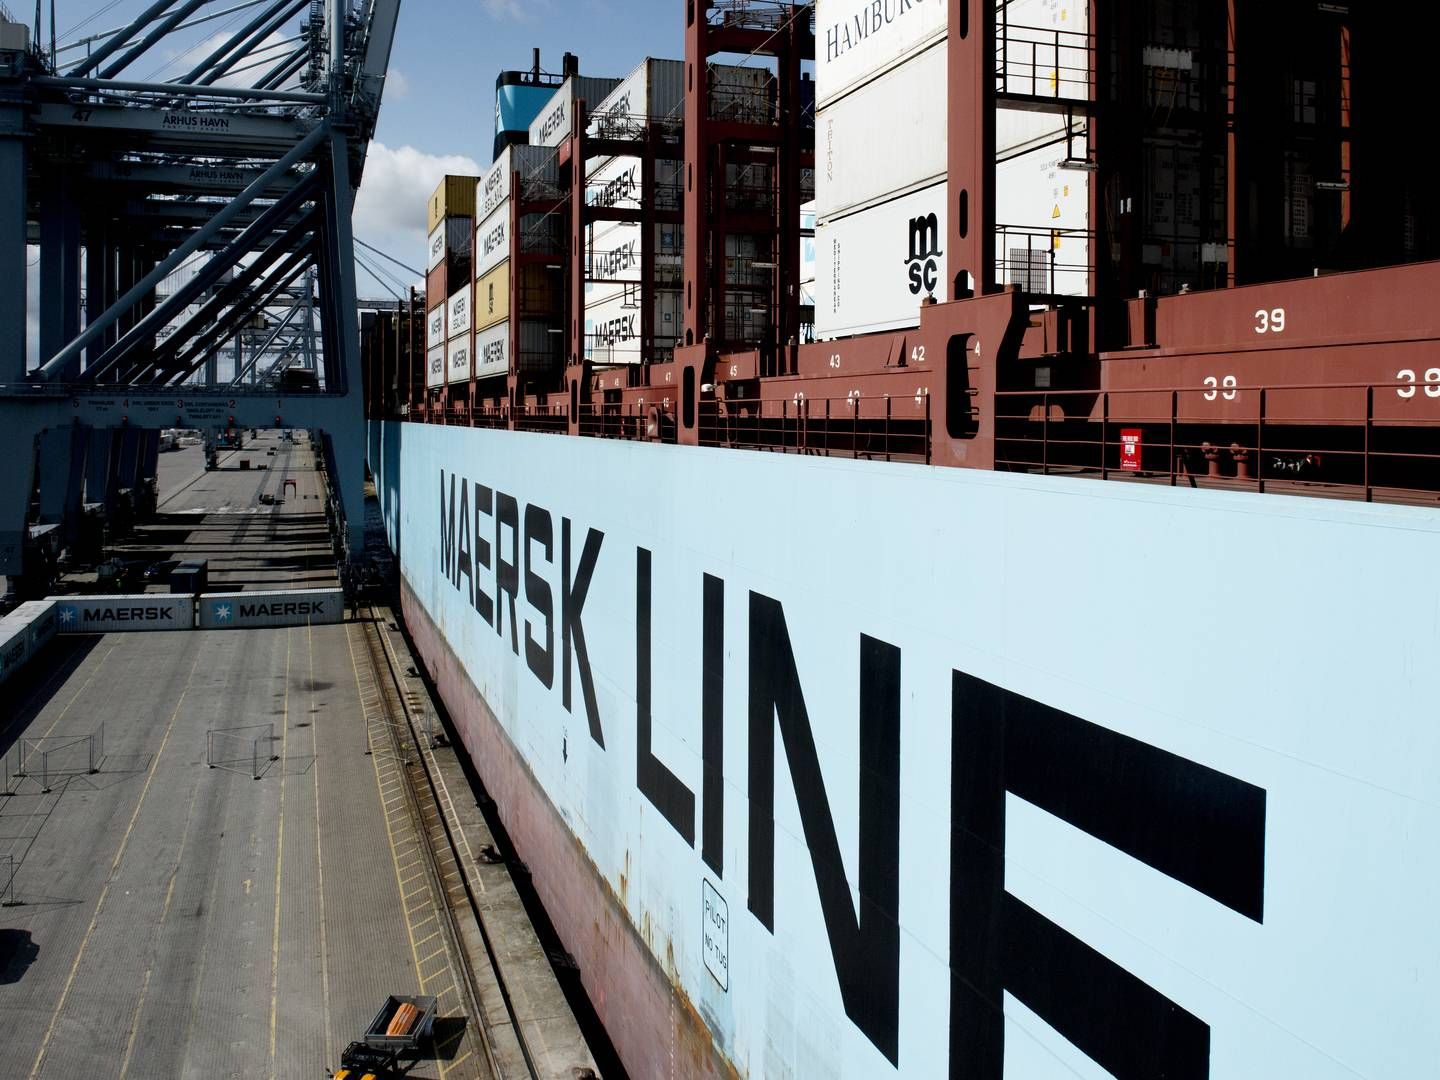 Arkivbillede af Maersk Line containerskib - Merete Mærsk. | Foto: Tanja Carstens Lund // Jyllands-Posten